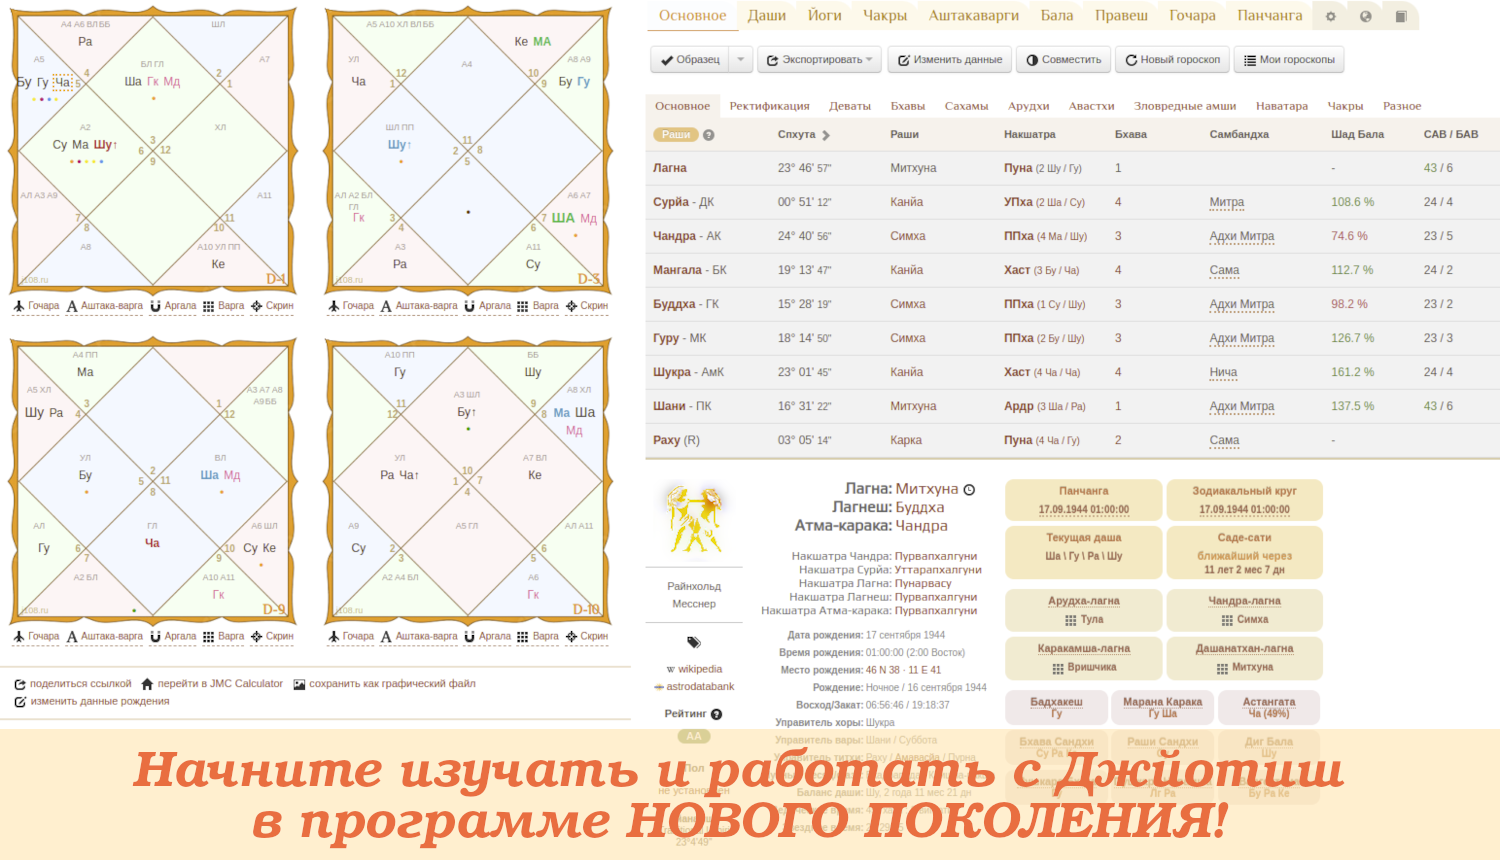 Астрологическая онлайн программа для Джйотиш астрологов всех уровней:составить гороскоп, скачать расшифровку натальной карты, найти мухурту,ректифицировать время рождения - Jyotish Maha Charts